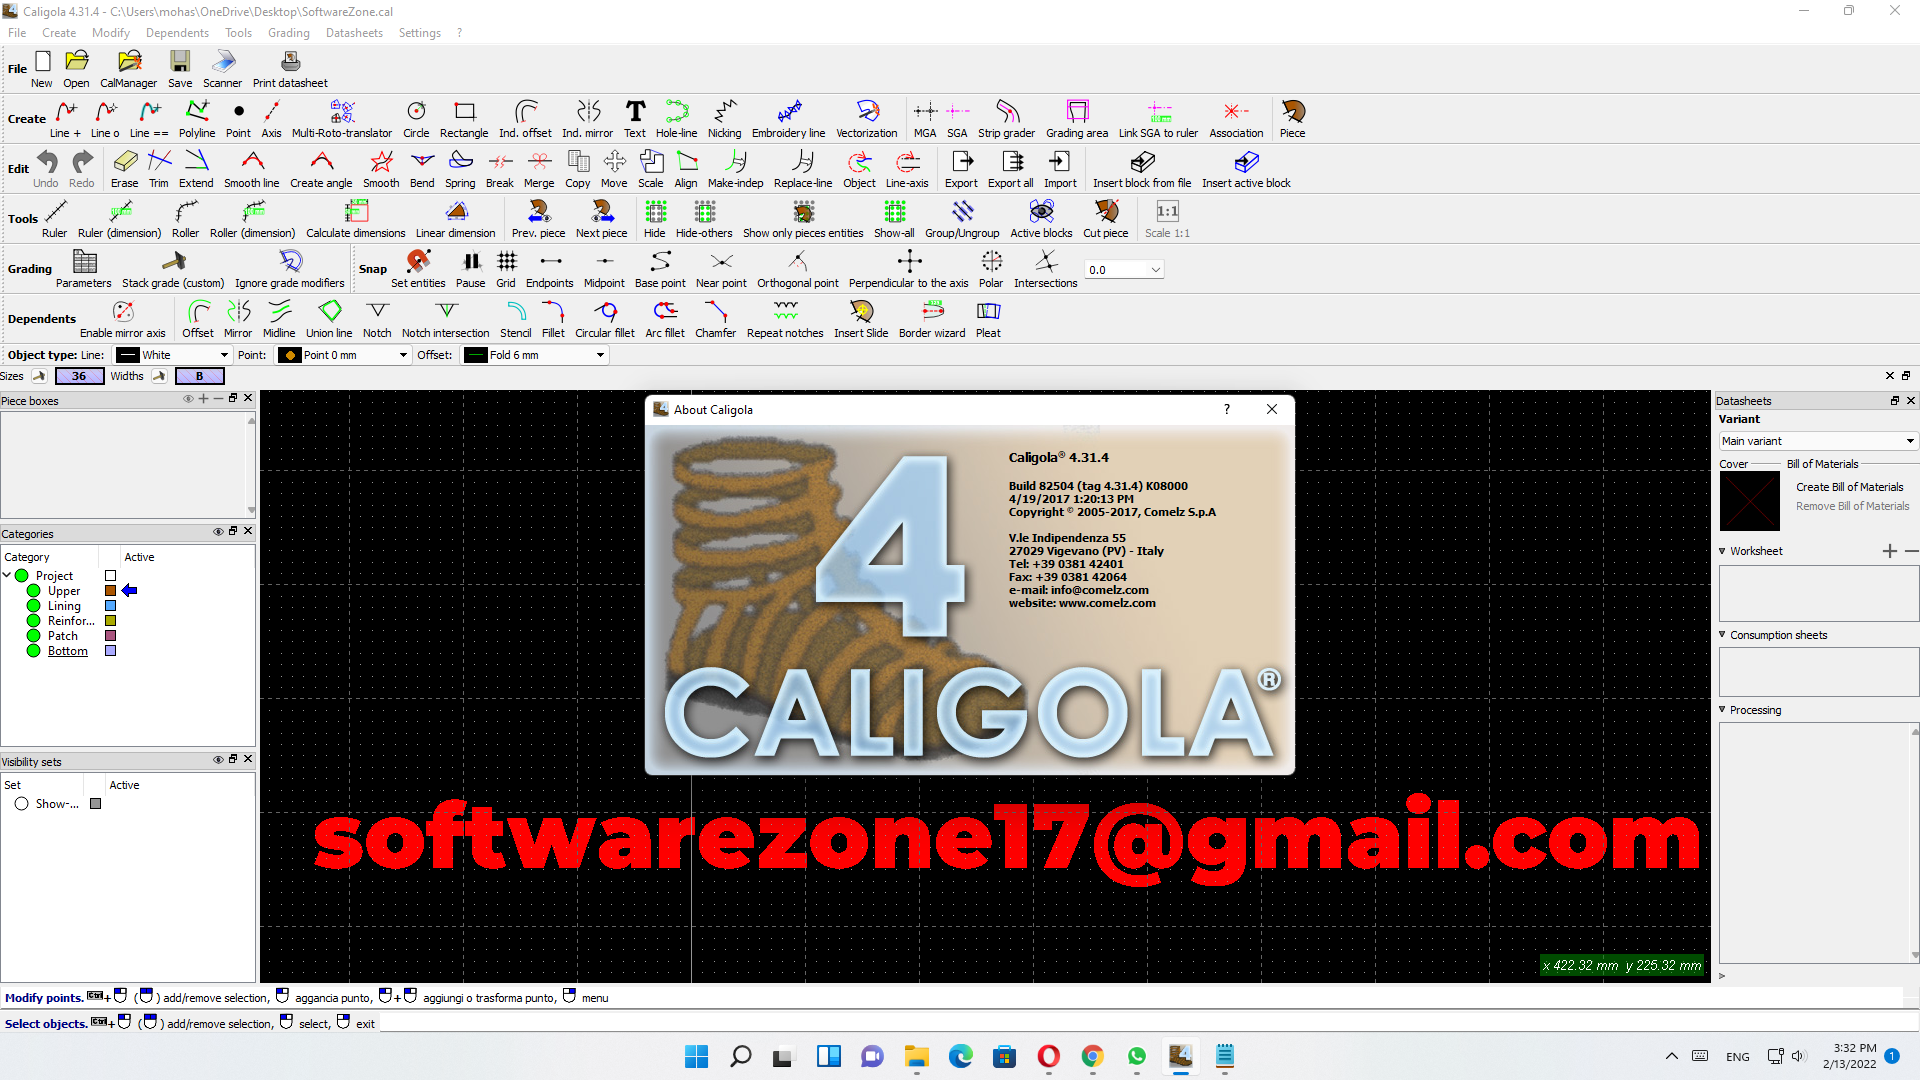 Caligola-Comelz-V4.31